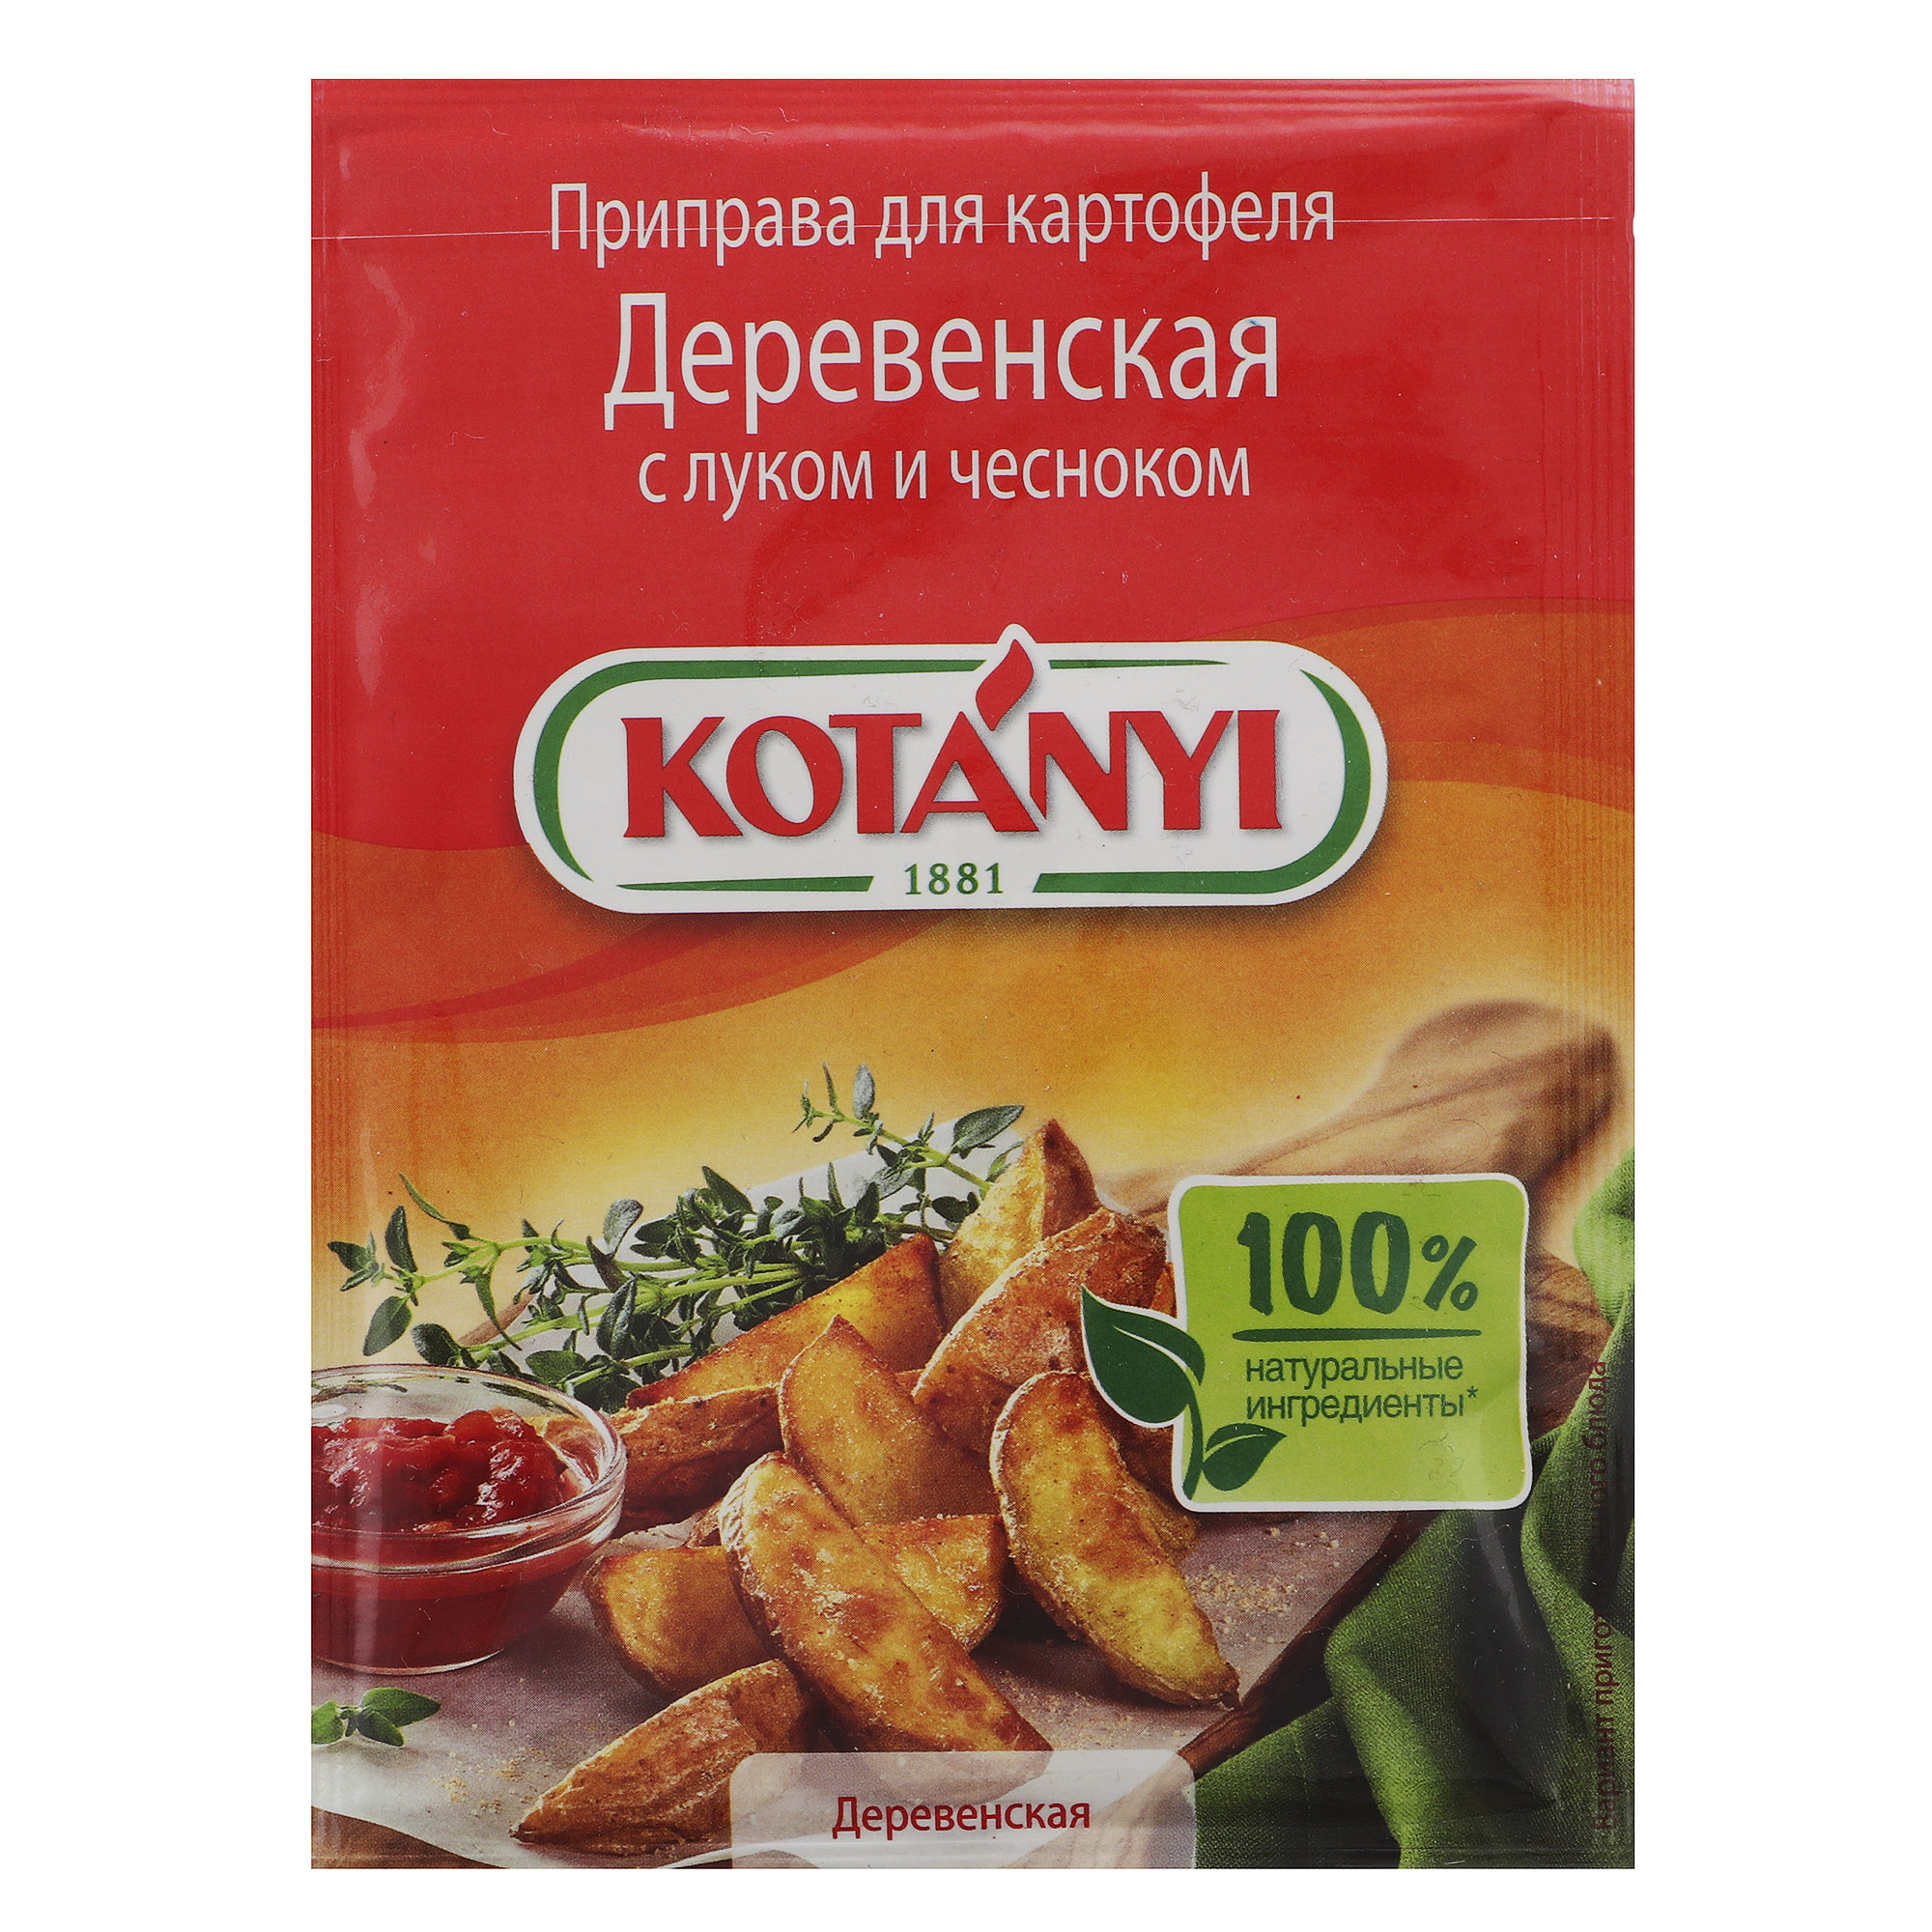 Приправа Kotanyi Деревенская для картофеля с луком и чесноком 20 г перец горошек kotanyi 36 г